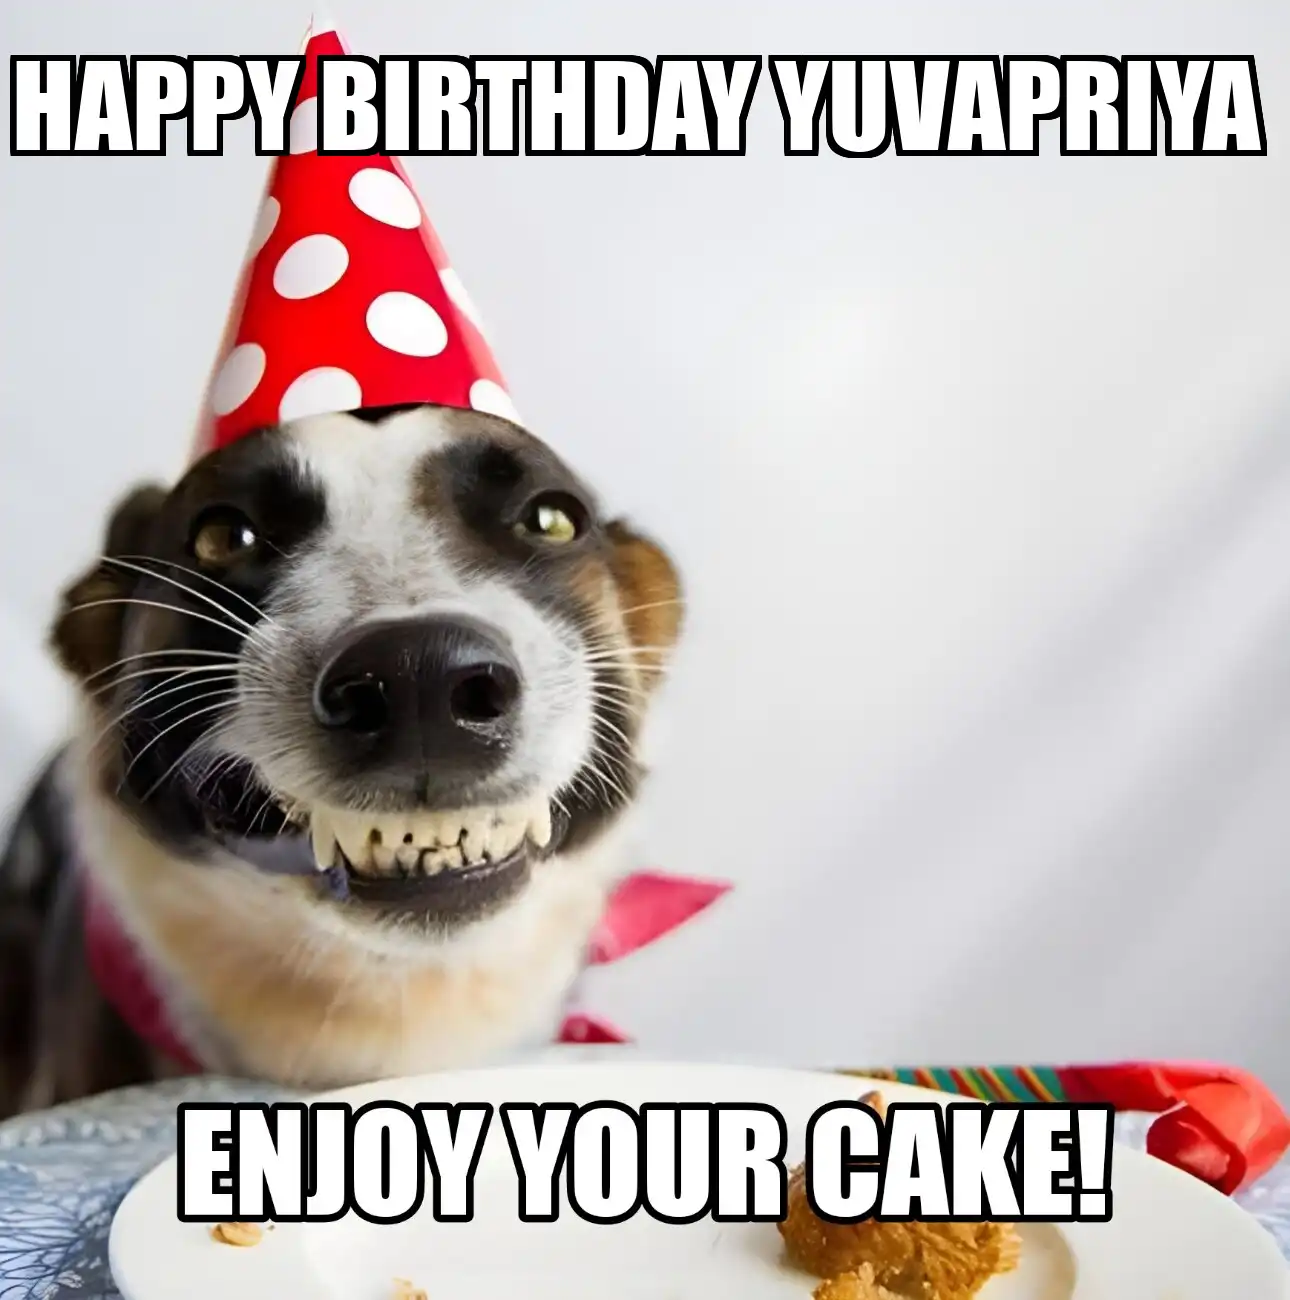 Happy Birthday Yuvapriya Enjoy Your Cake Dog Meme